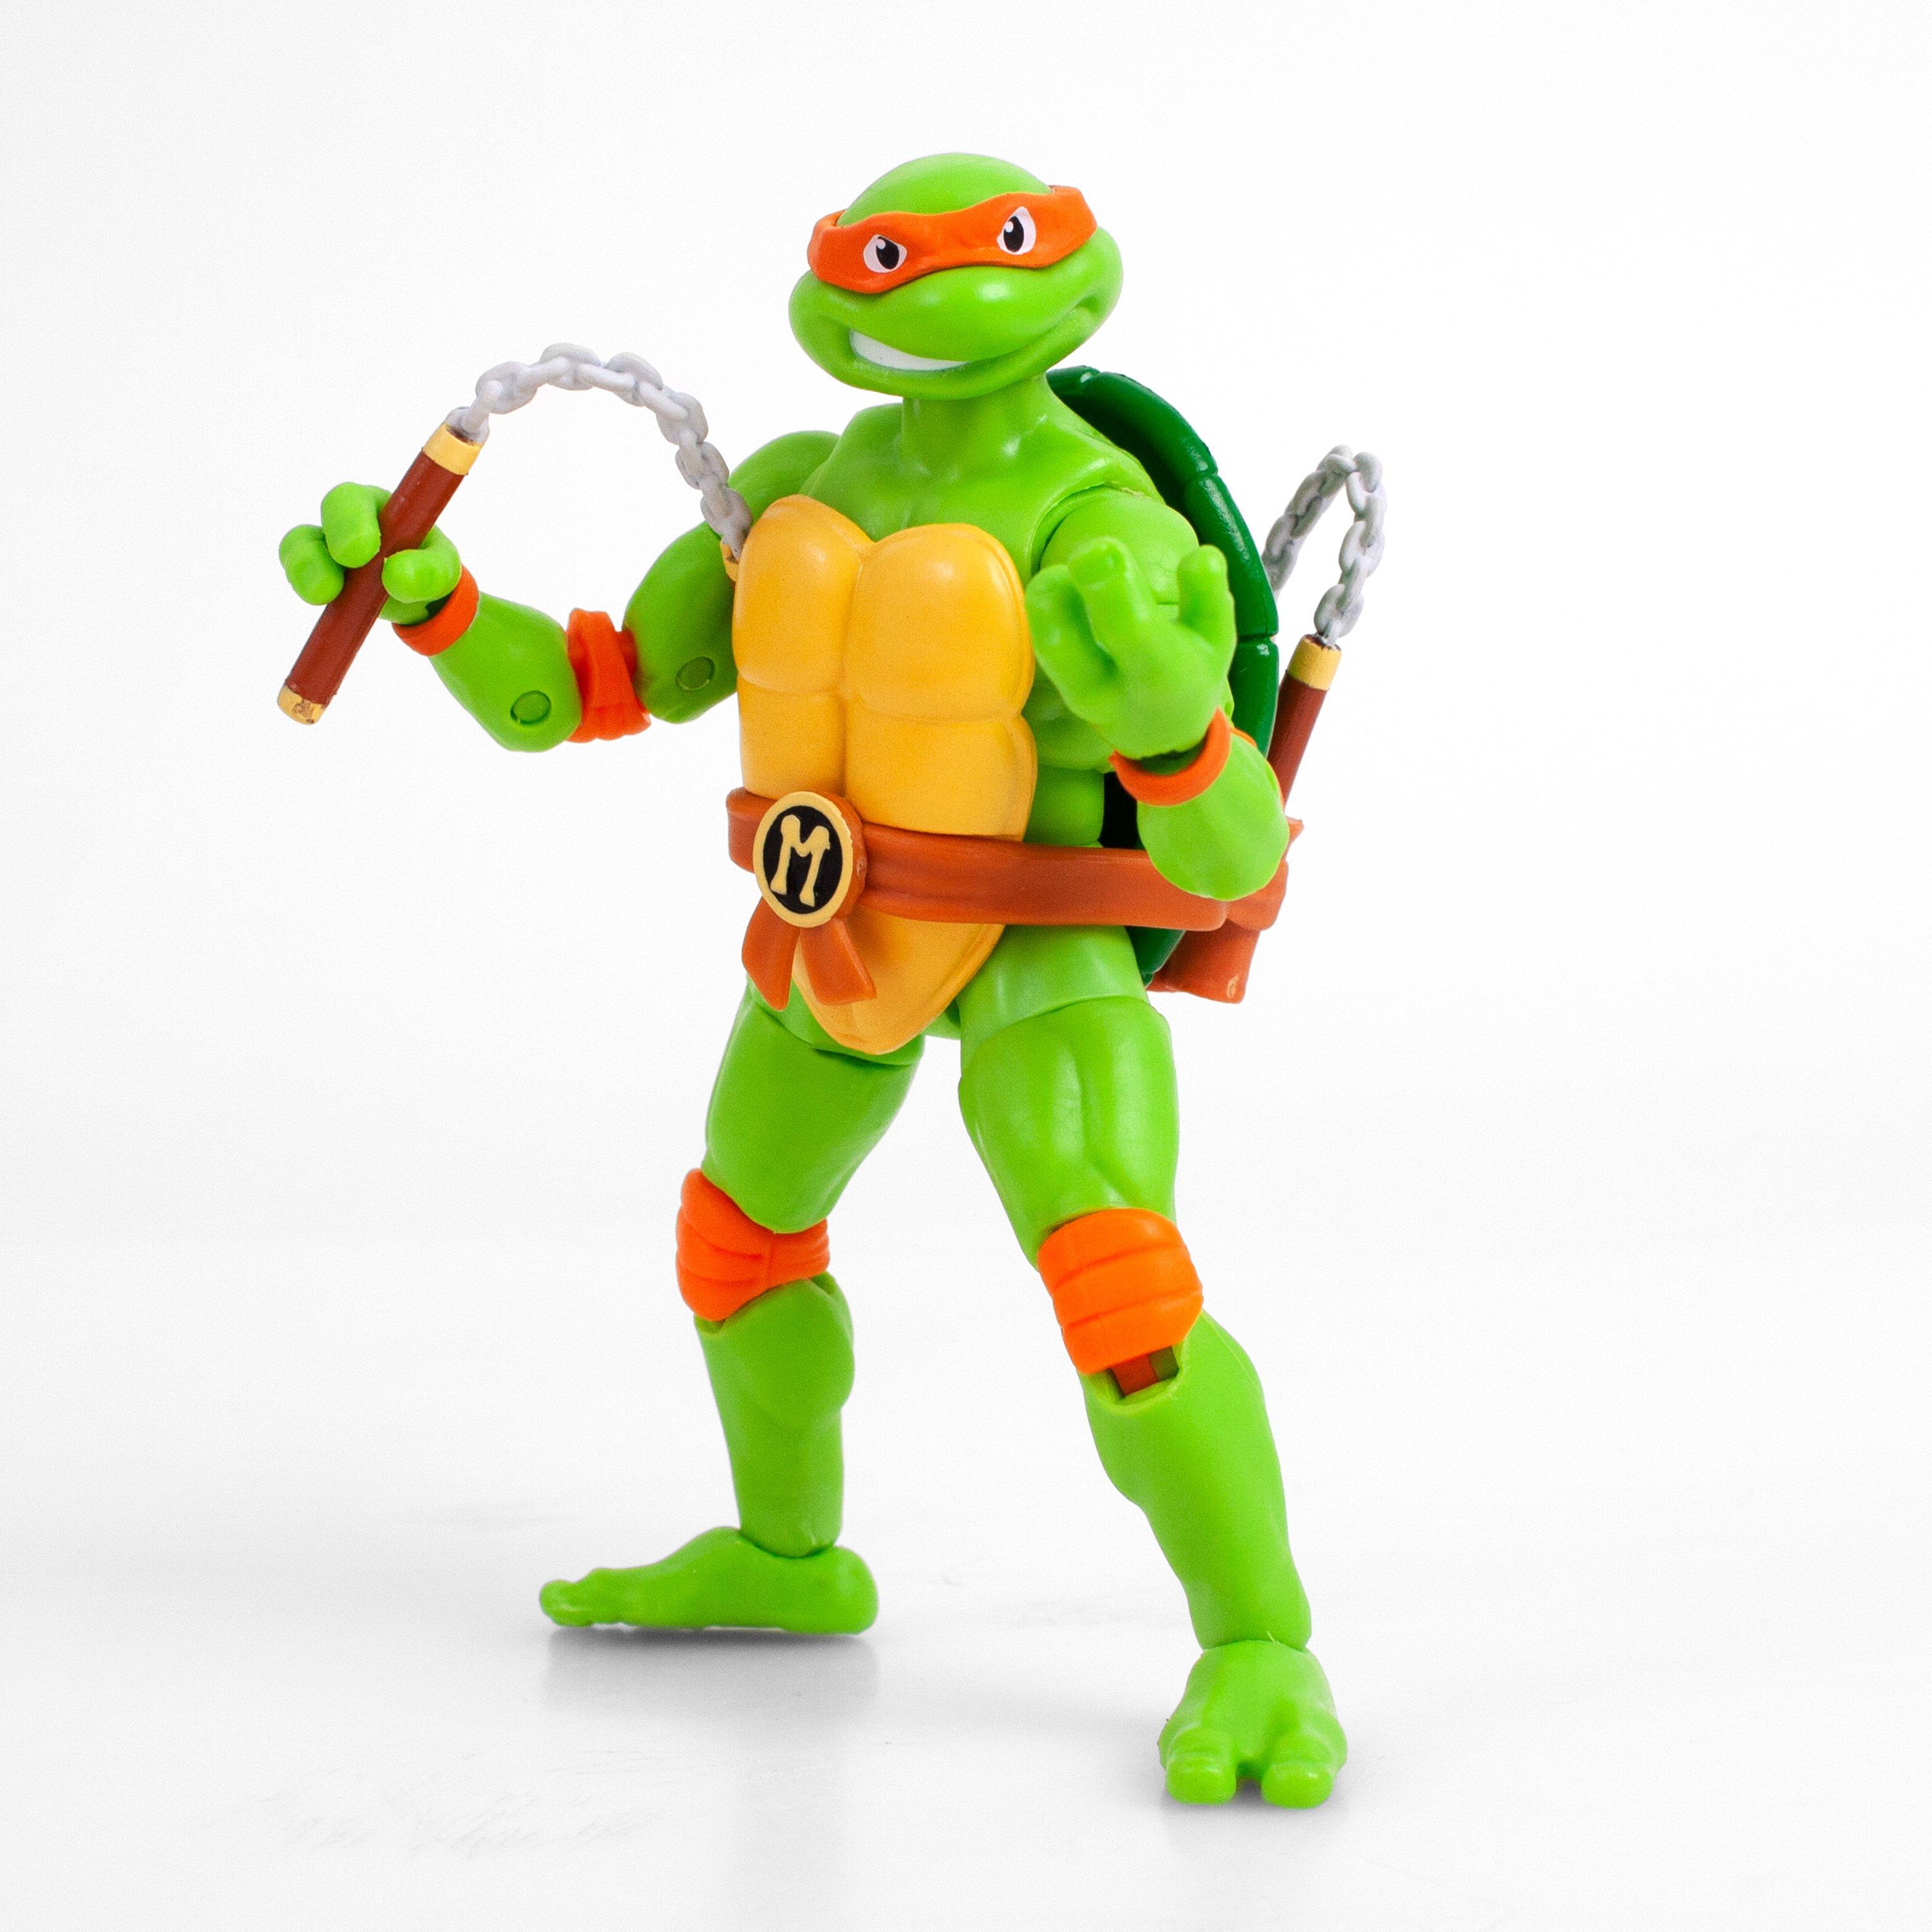 Teenage Mutant Ninja Turtles Ride On Toy | lupon.gov.ph